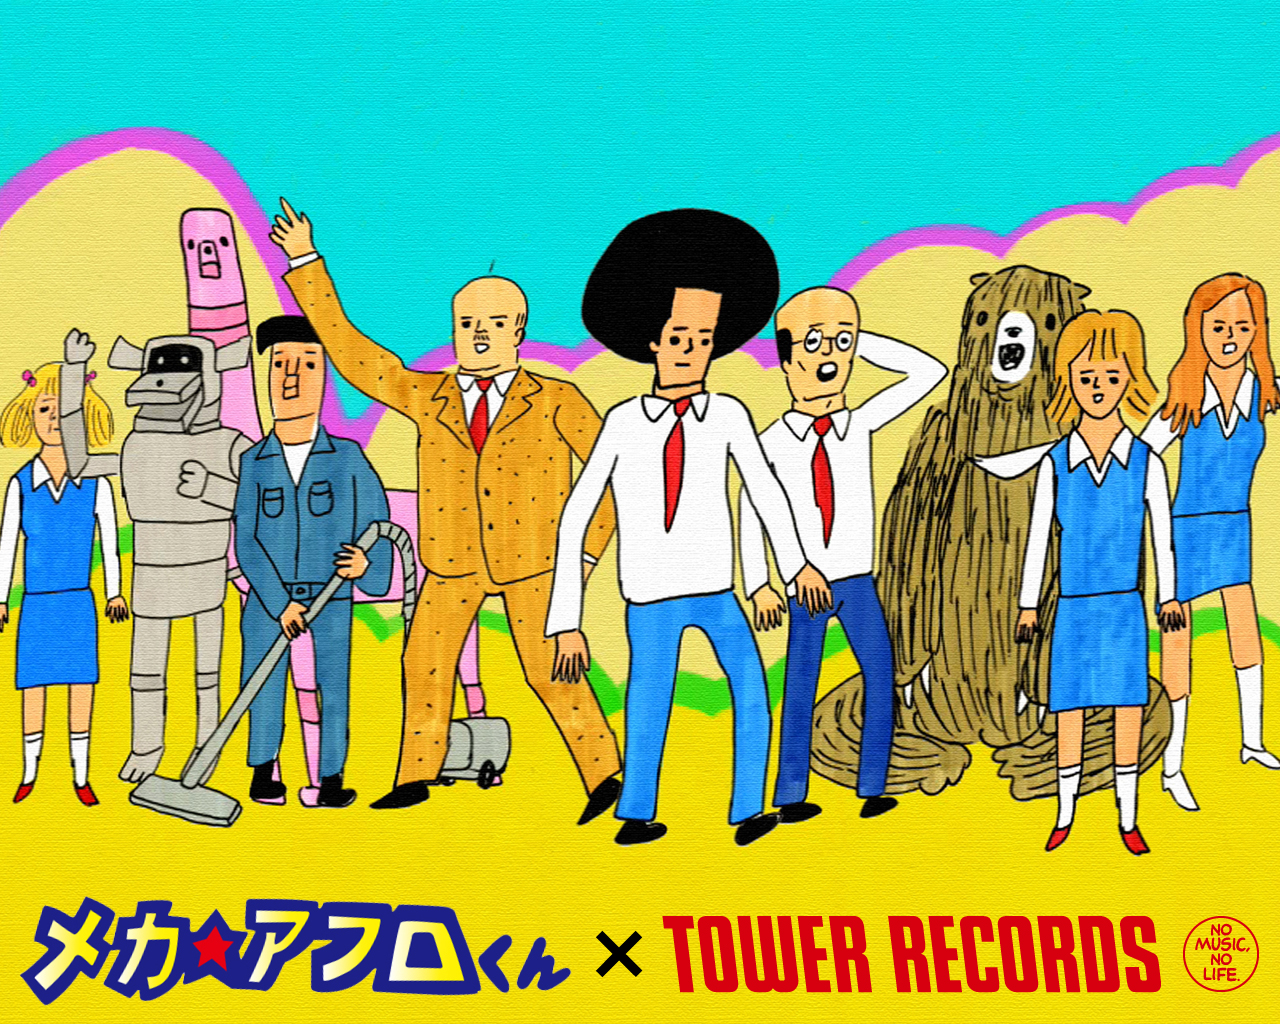 壁紙プレゼント実施中 サブカル系漫画 メカ アフロくん がアニメ化 Tower Records Online